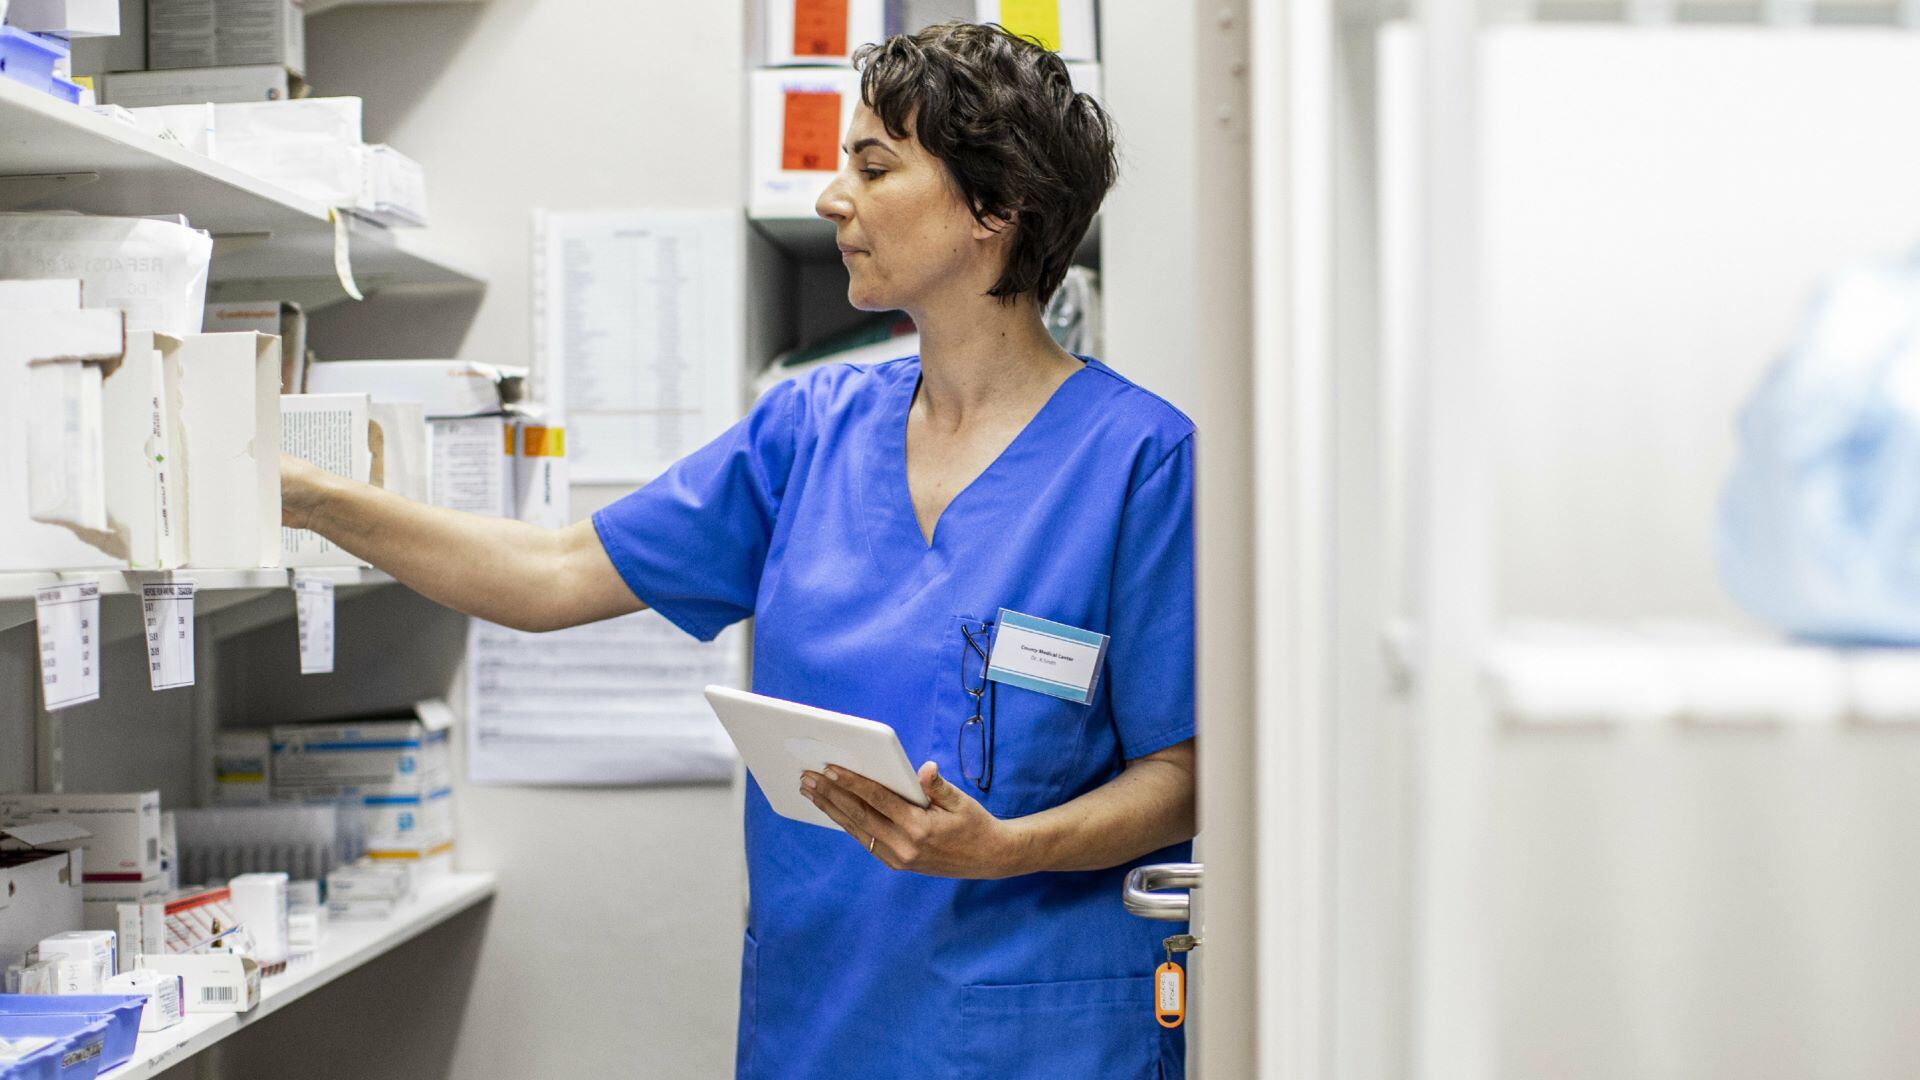 Healthcare worker holding tablet grabbing paper off shelf